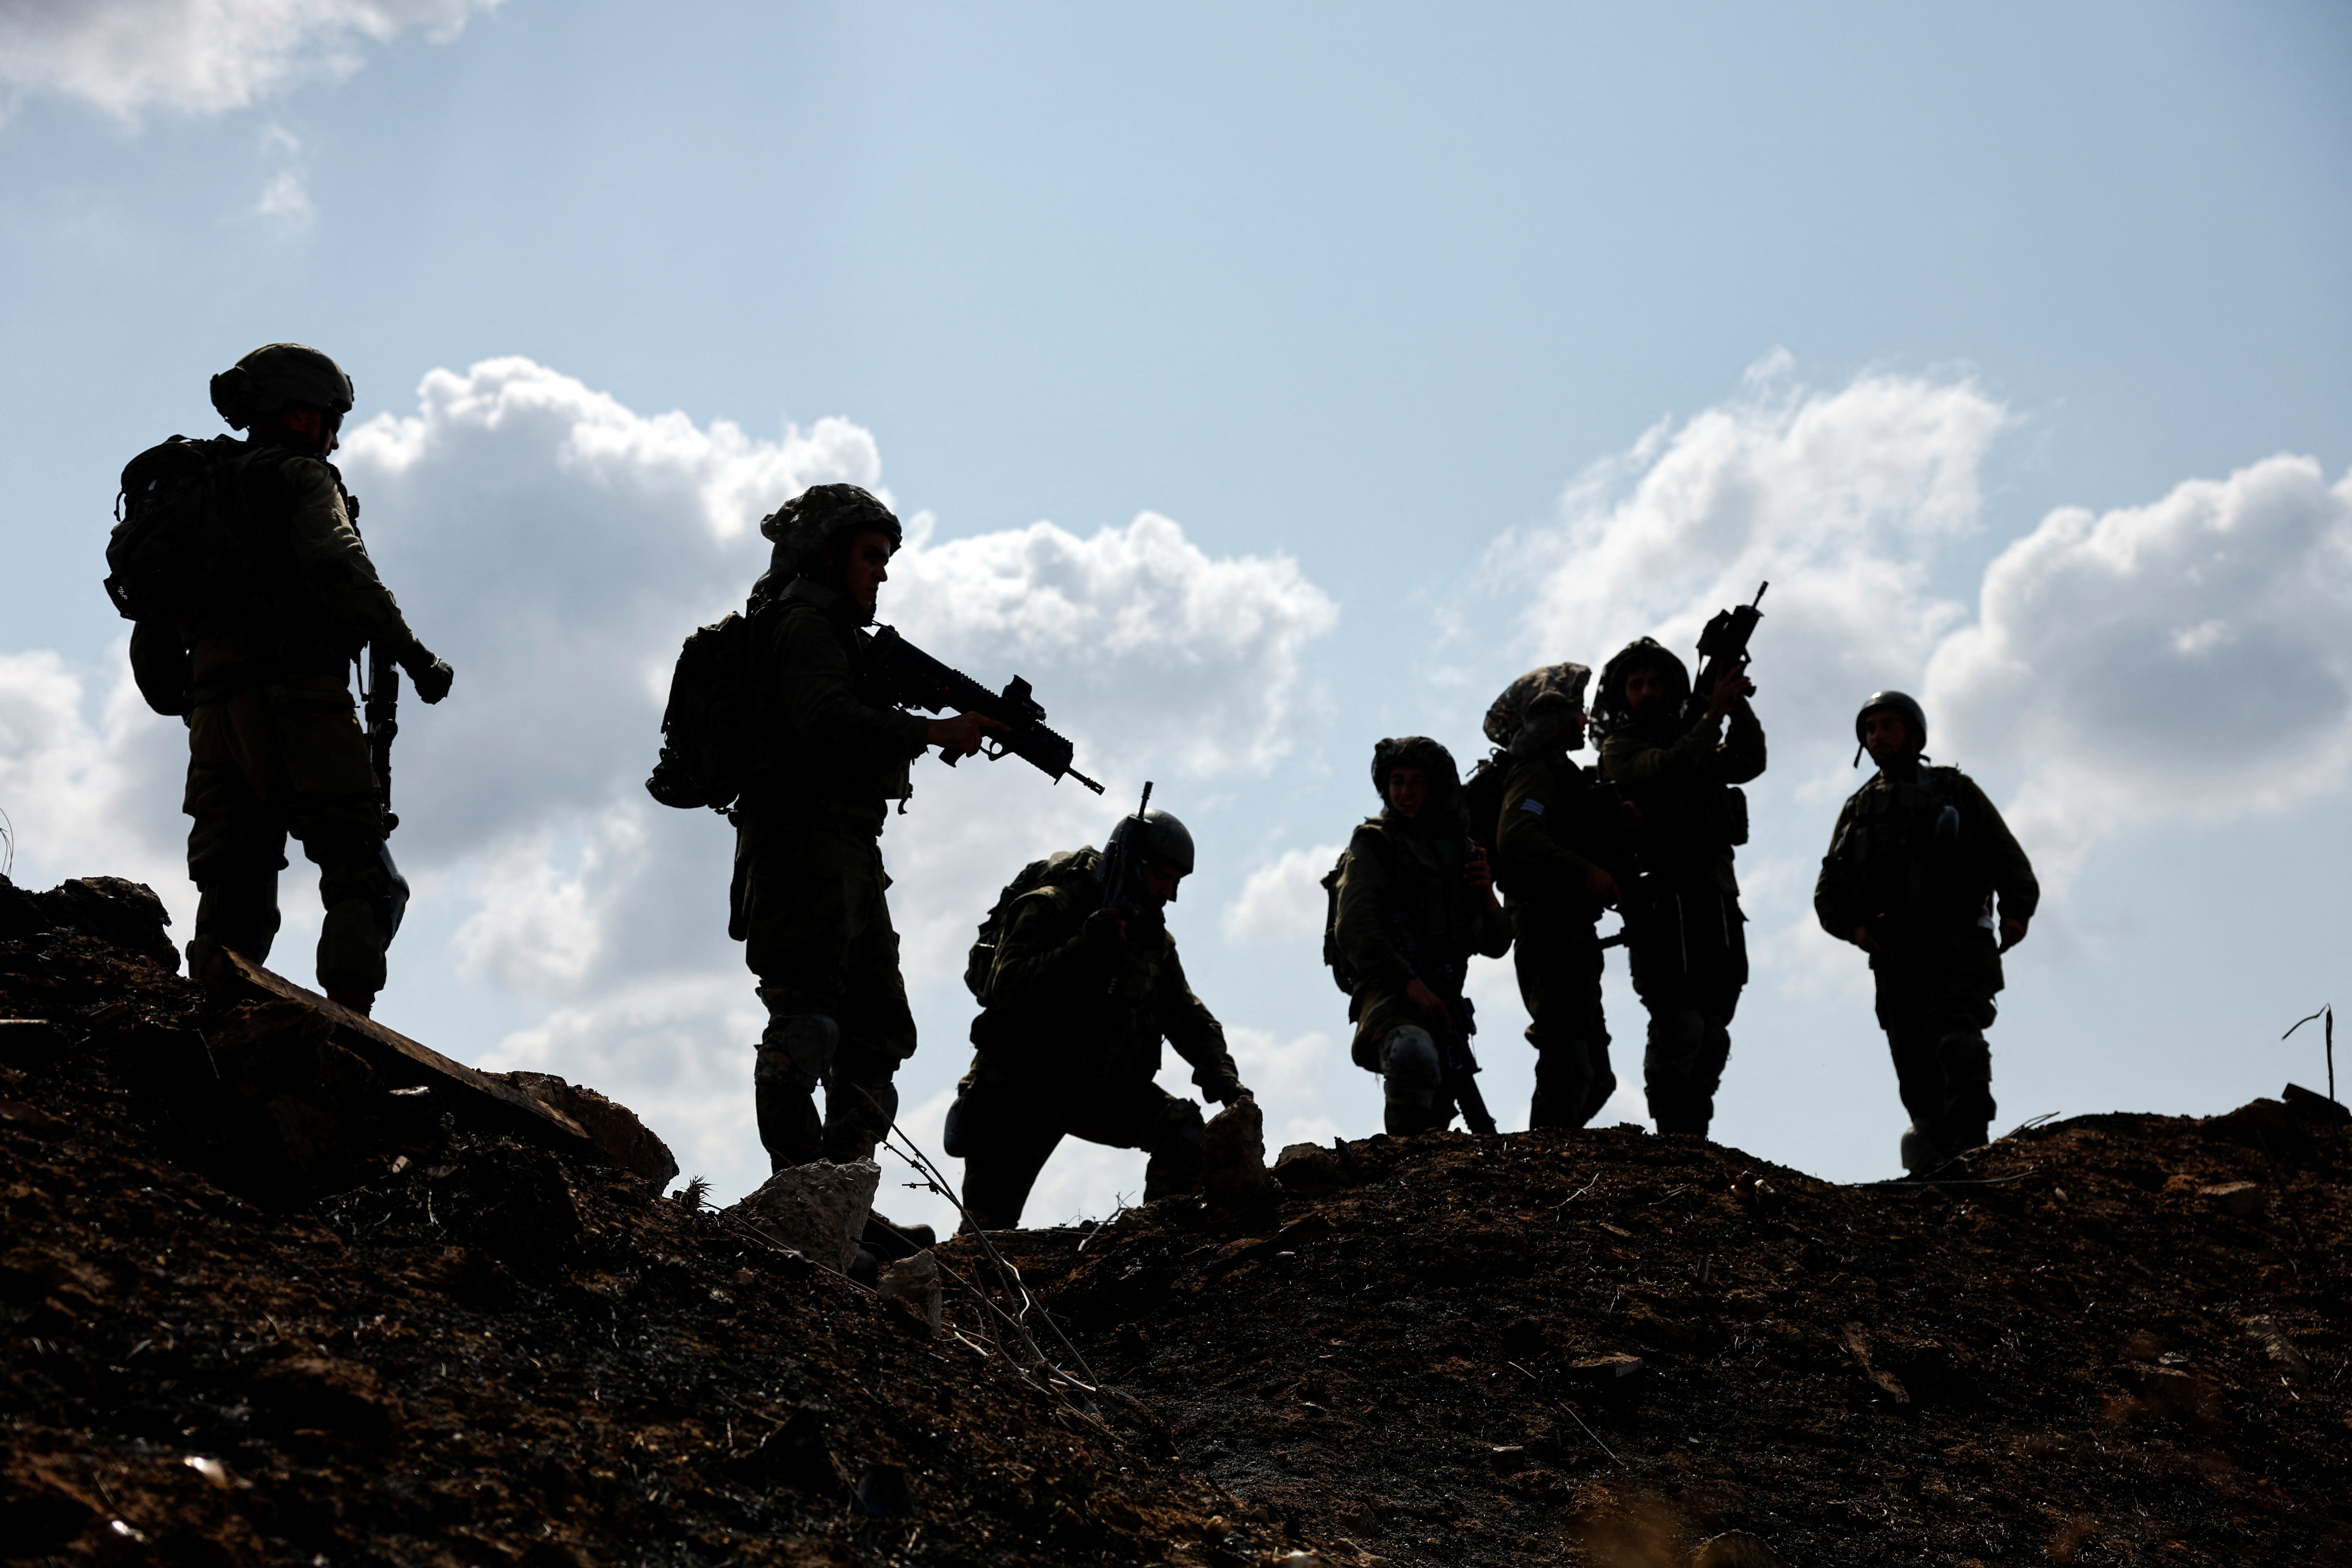 Ισραηλινοί στρατιώτες συγκεντρώνονται μετά τον συναγερμό για ένα προφανές περιστατικό ασφαλείας, στην Ασκελόν, στο νότιο Ισραήλ